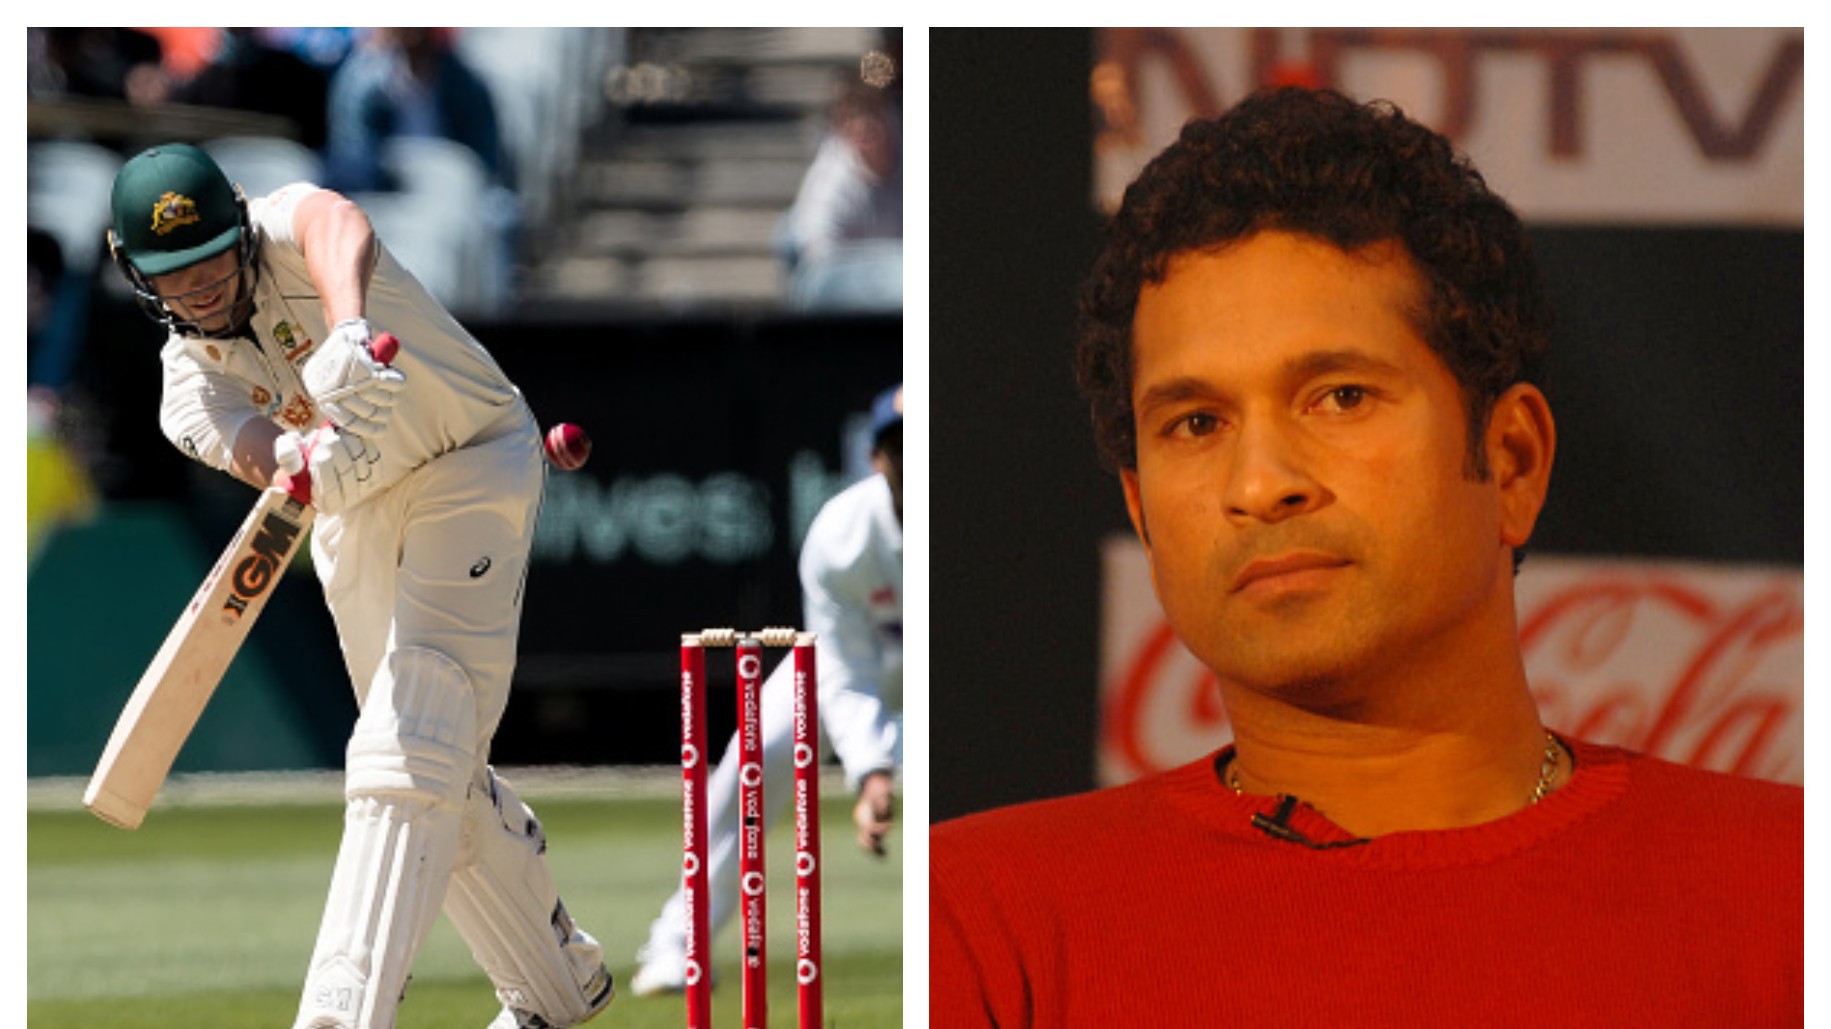 AUS v IND 2020-21: Sachin Tendulkar says Australia's batting unit 